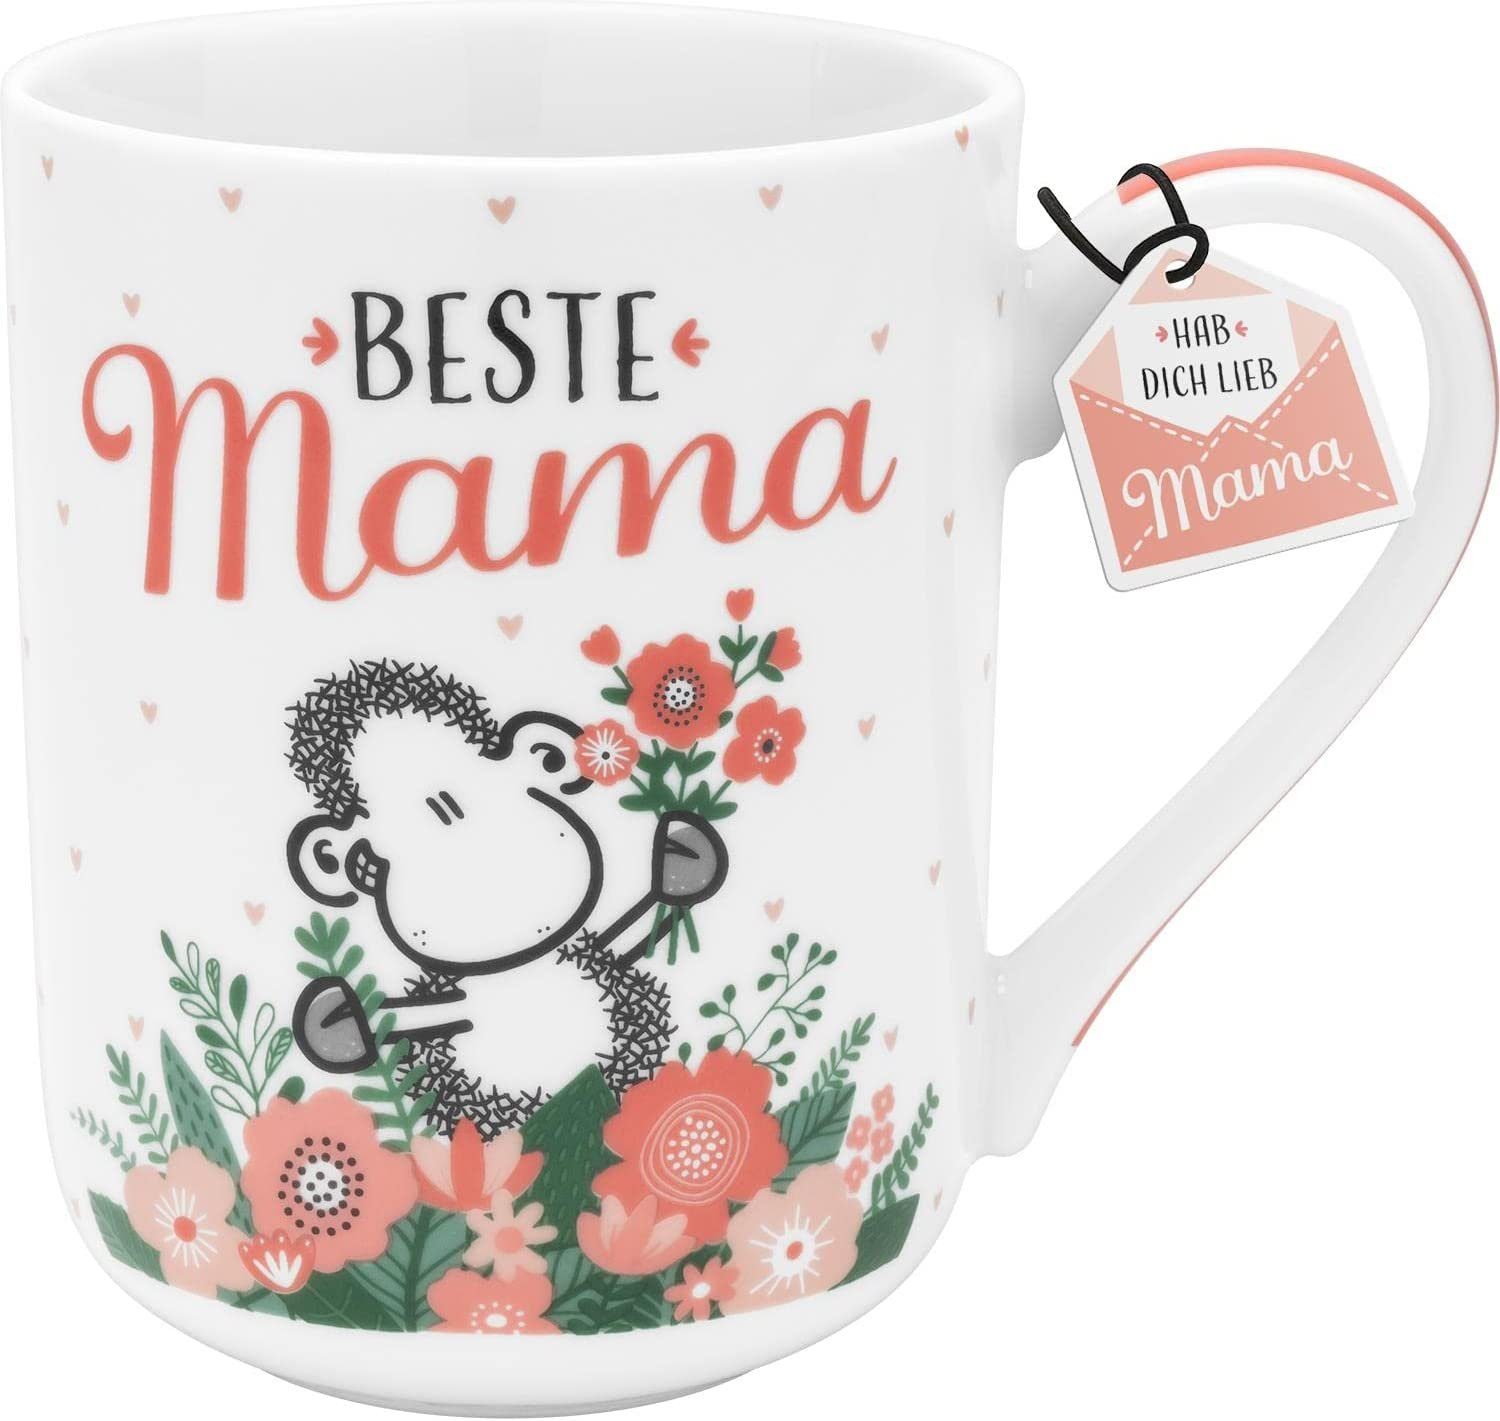 Sheepworld Tasse Tasse Kaffeetasse Kaffeebecher 50cl Porzellan XL Mama, Beste Material: Sheepworld Teetasse